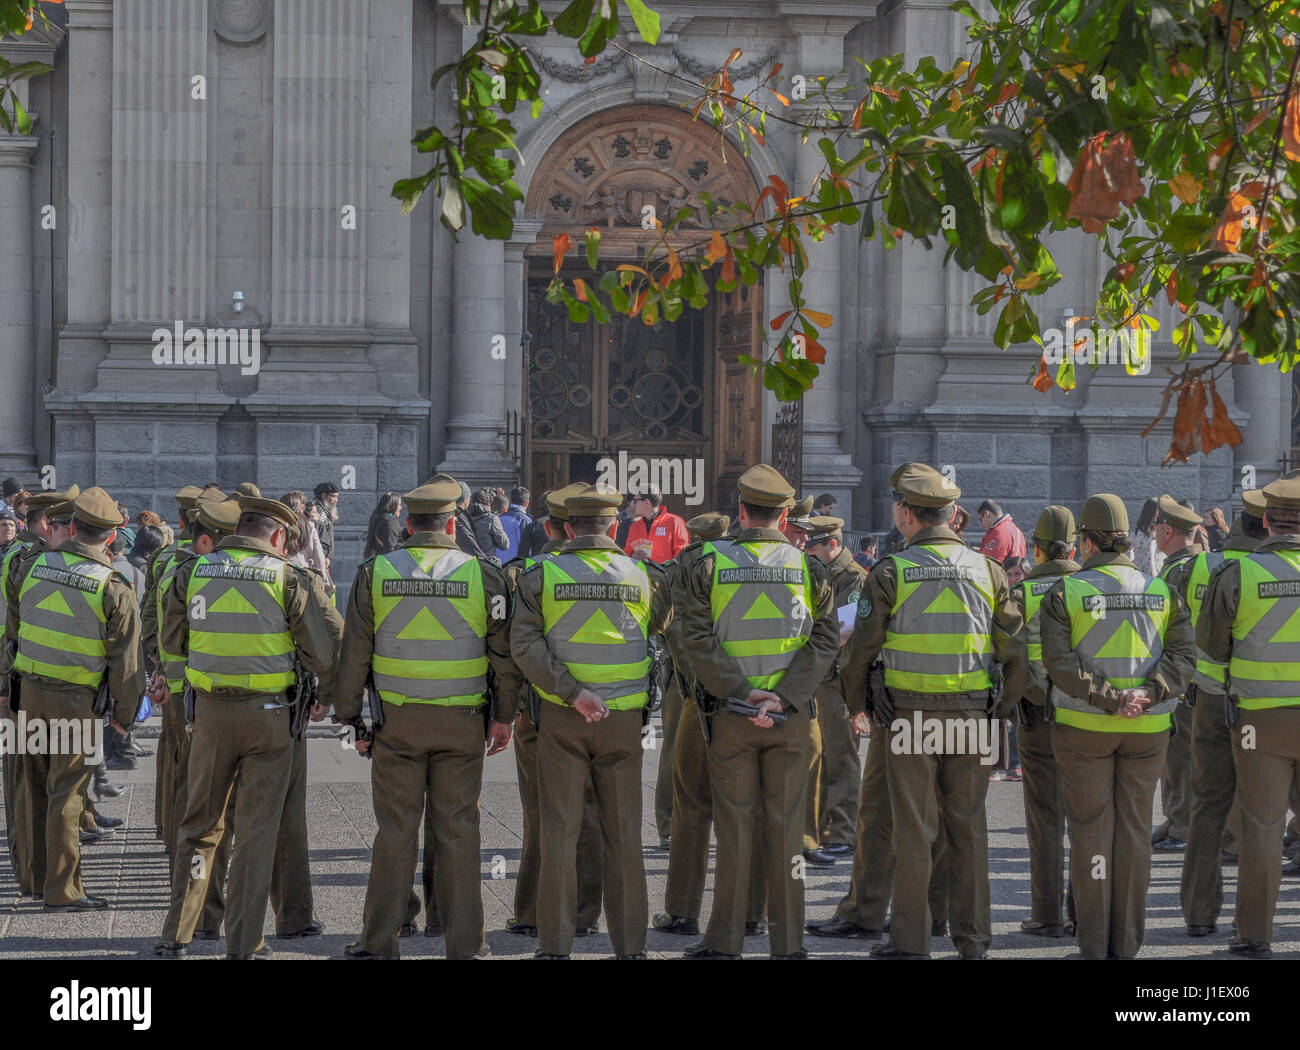 SANTIAGO DE Cile, Cile - 23 novembre 2015: gli ufficiali di polizia, Carabineros sono visti al di fuori della Cattedrale Metropolitana, Plaza de Armas piazza principale, S Foto Stock